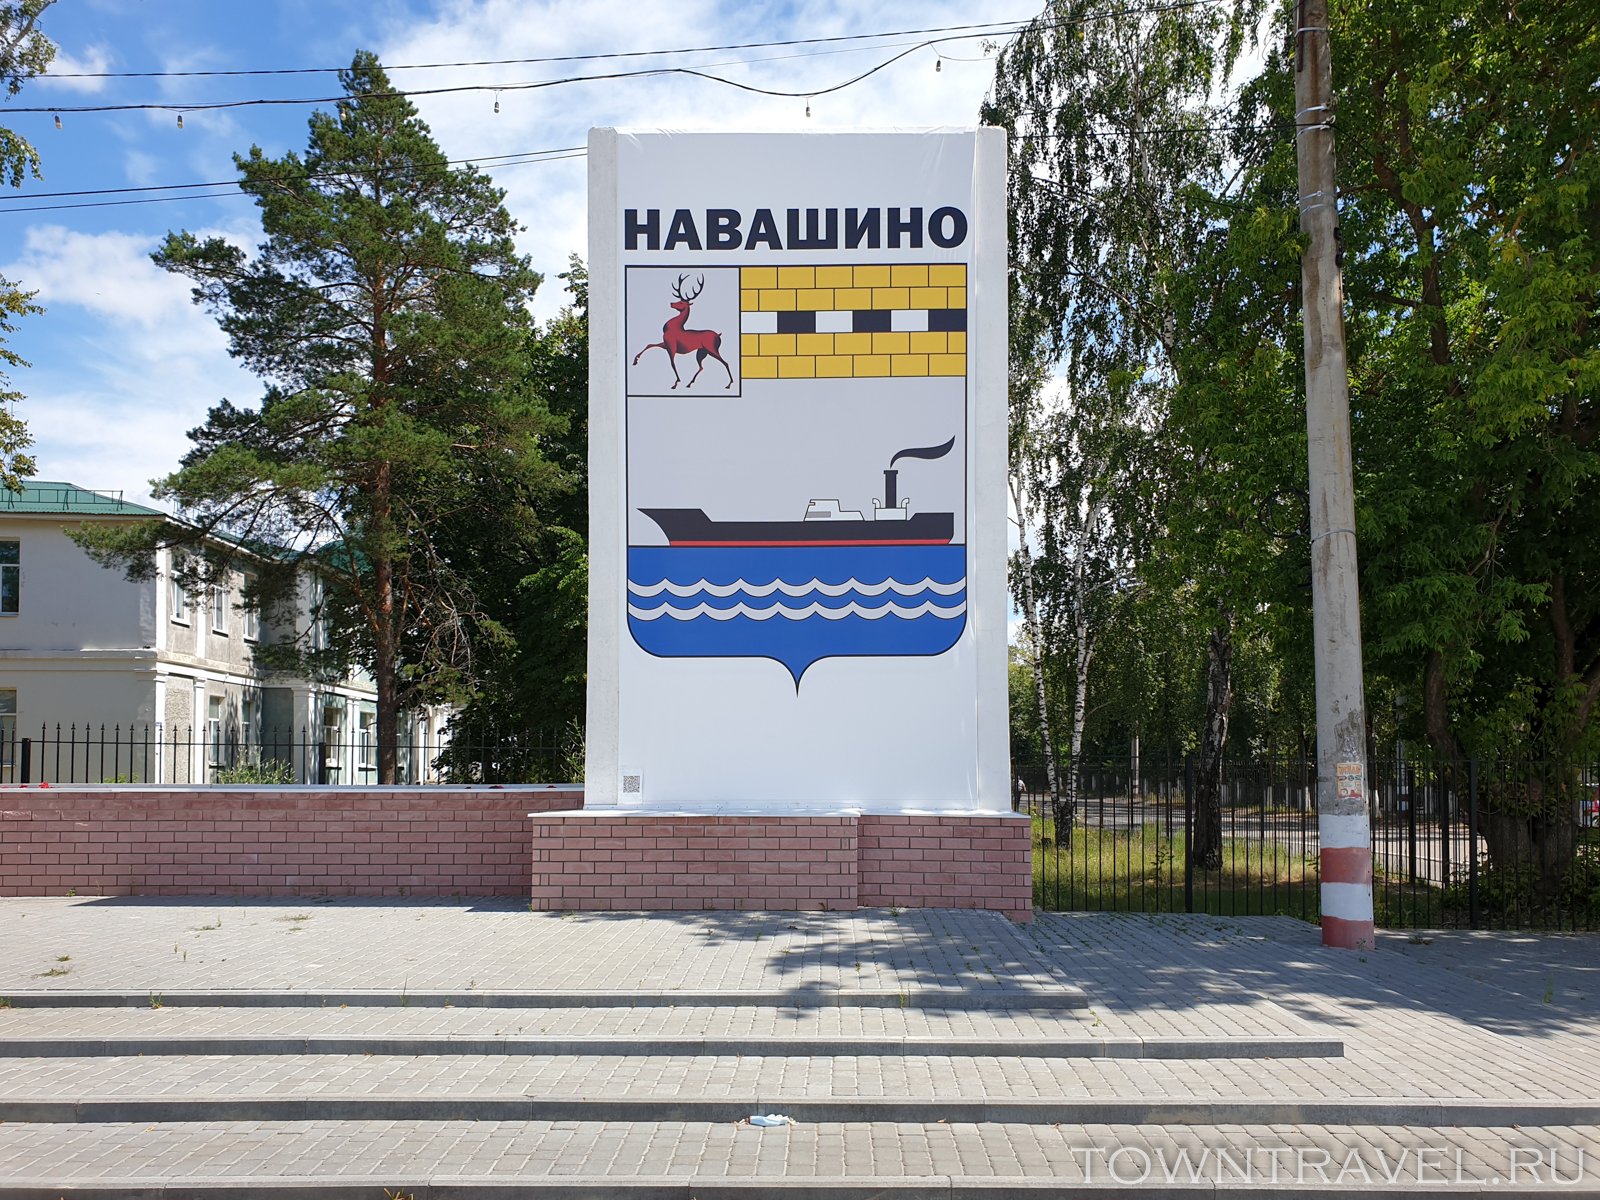 Навашинский районный суд